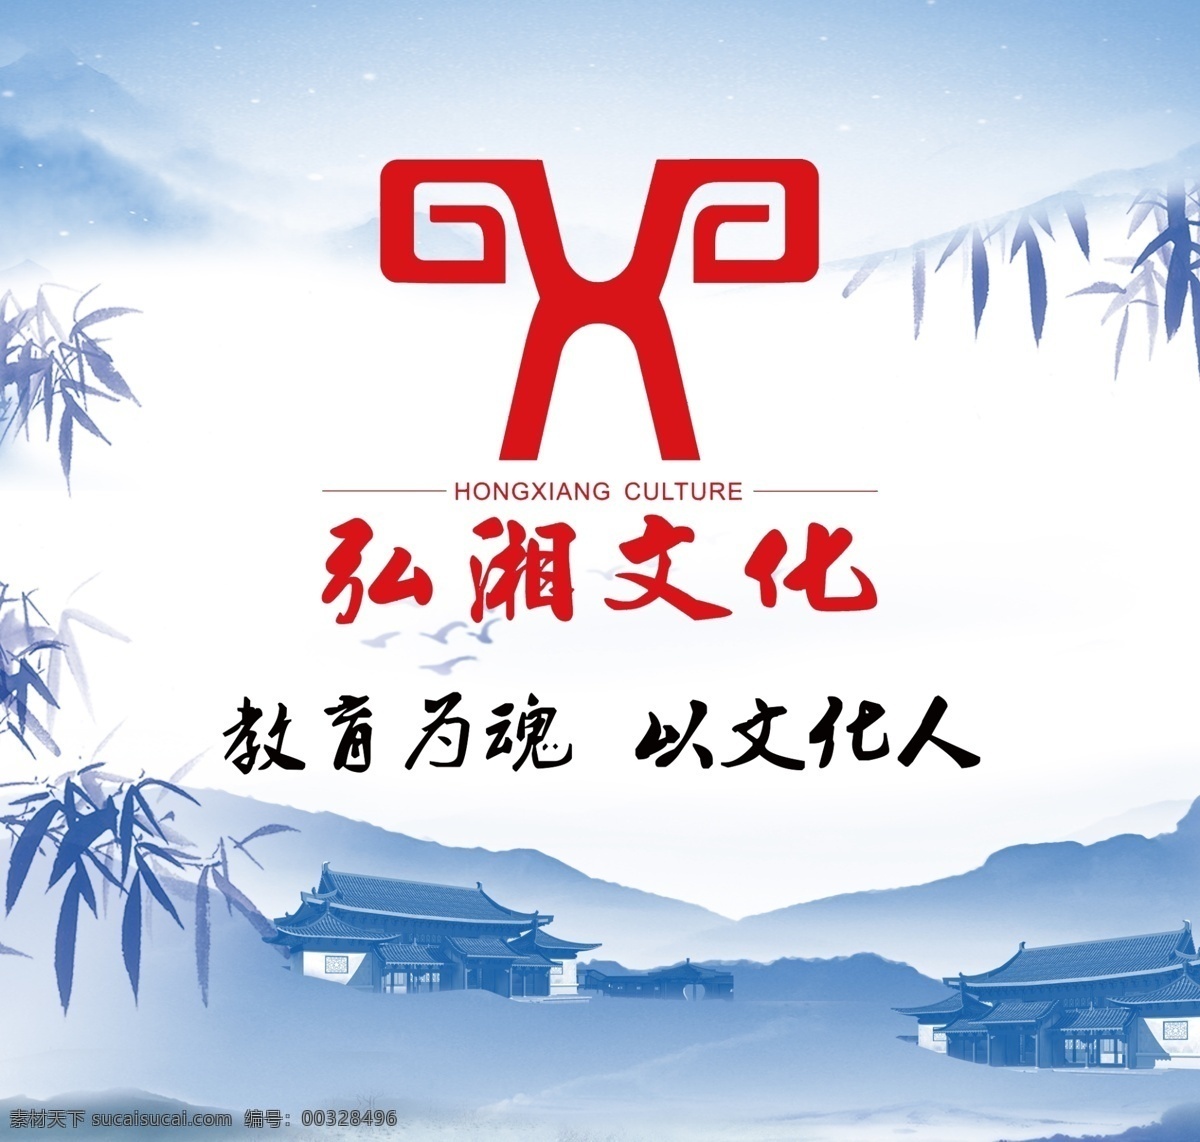 公司背景墙 湖湘文化 艺术 传统 文化艺术 传统文化